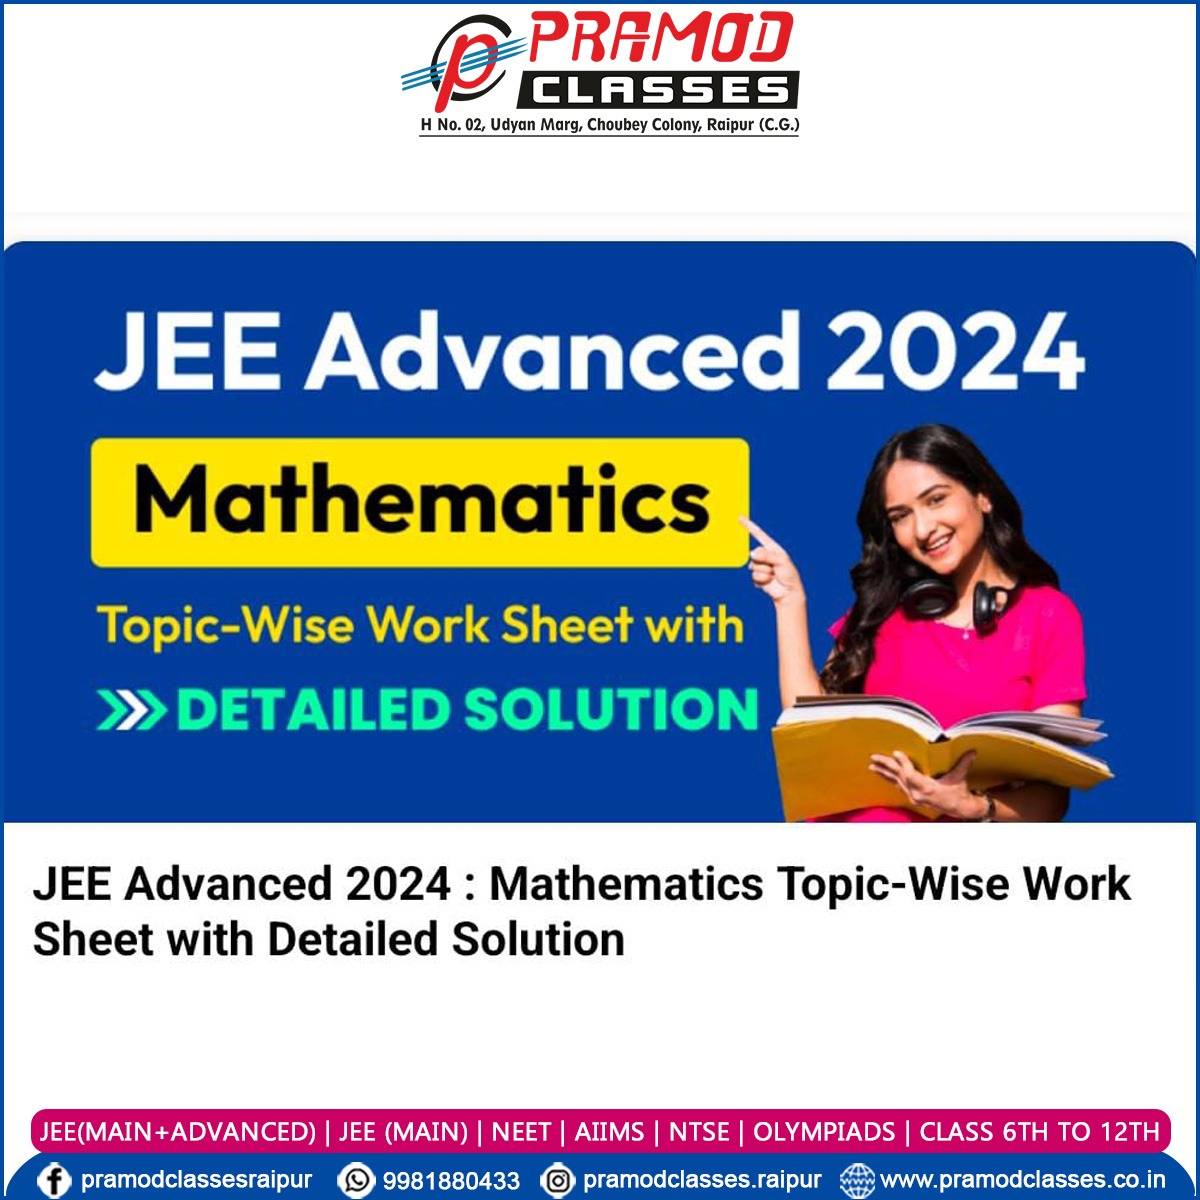 𝗝𝗘𝗘 𝗔𝗱𝘃𝗮𝗻𝗰𝗲𝗱 𝟮𝟬𝟮𝟰: 𝗠𝗮𝘁𝗵𝗲𝗺𝗮𝘁𝗶𝗰𝘀

#JEE #JEE2024 #JEEMains #JEEMains2024 #JEEAdvanced #JEEAdvanced2024 #IITJEE #IITs #NITs #IIITs #Maths #Physics #Chemistry